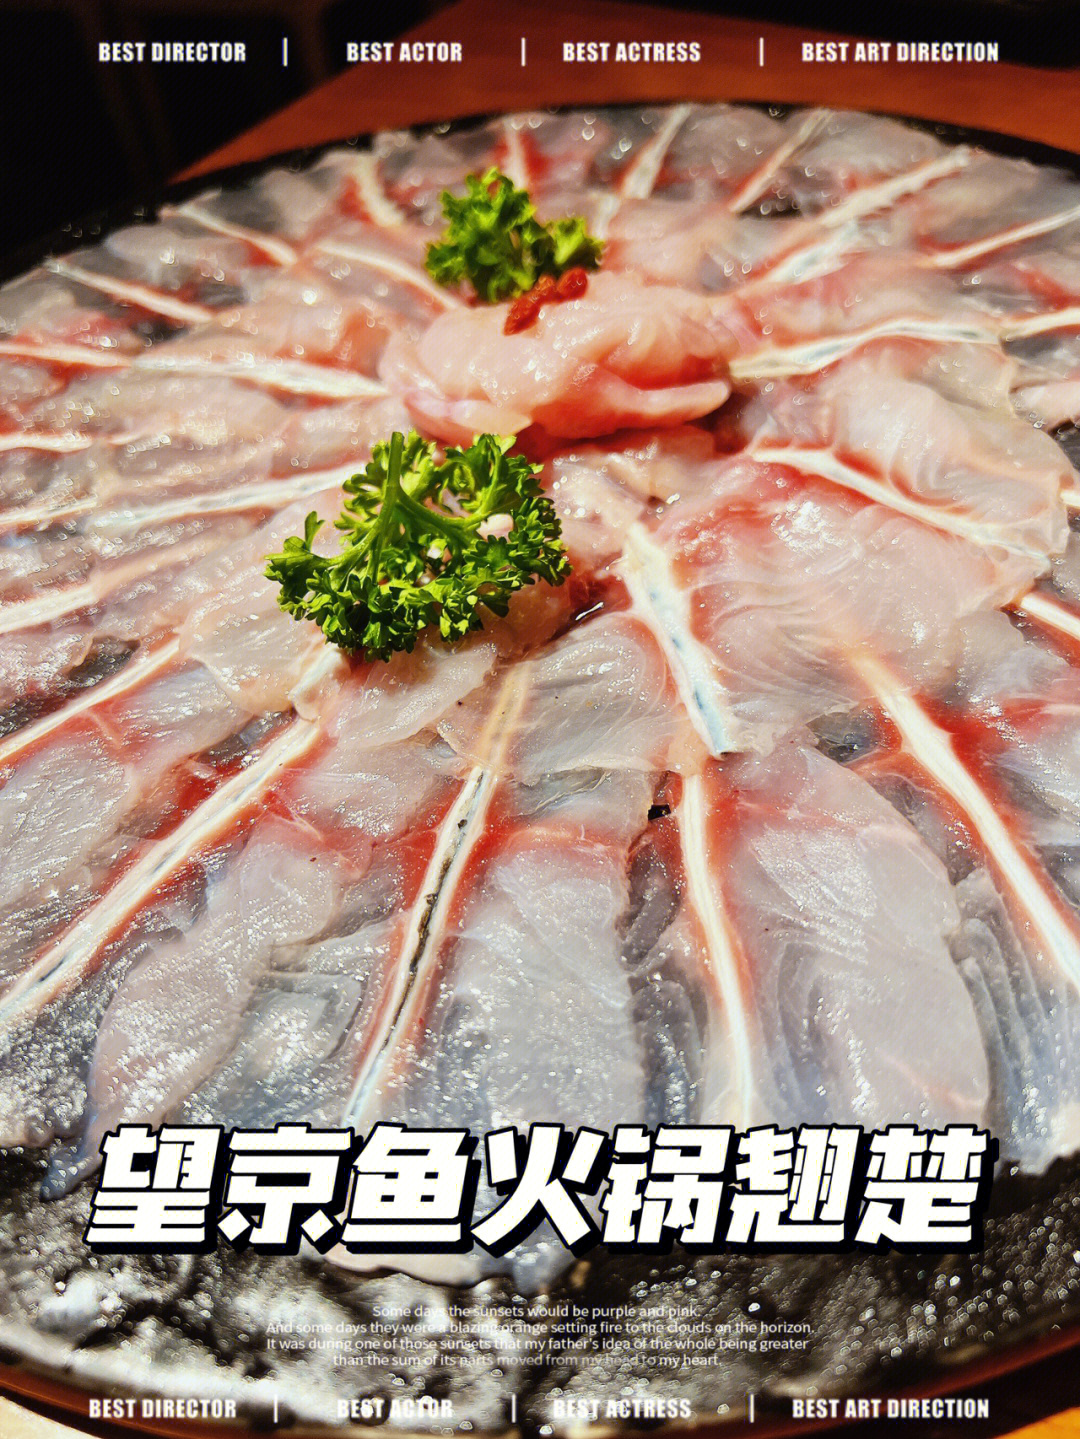 自制斑鱼火锅蘸料图片